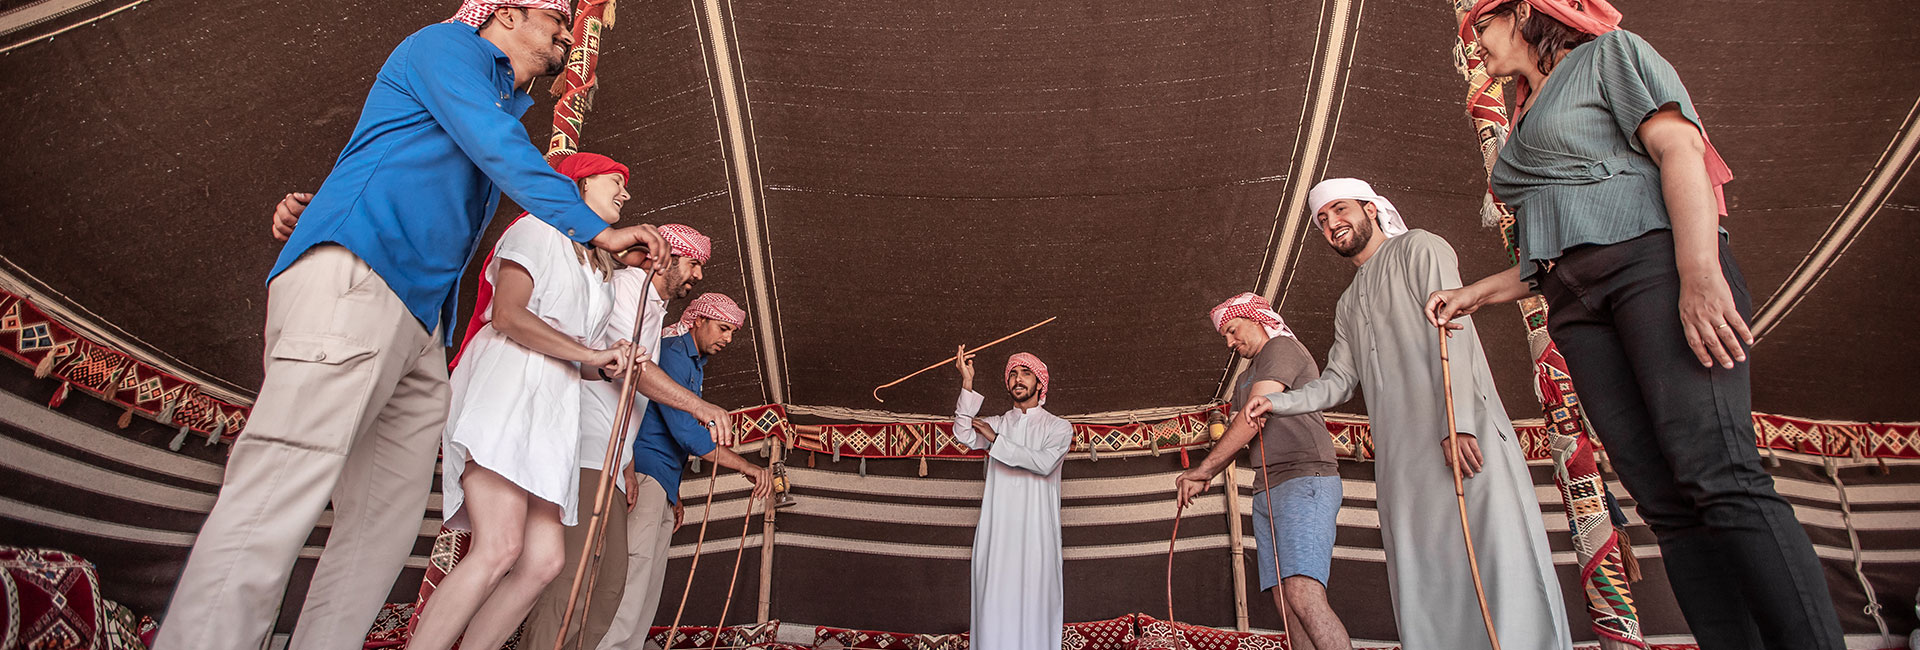 Сафари С Погружение В Культуру Бедуинов